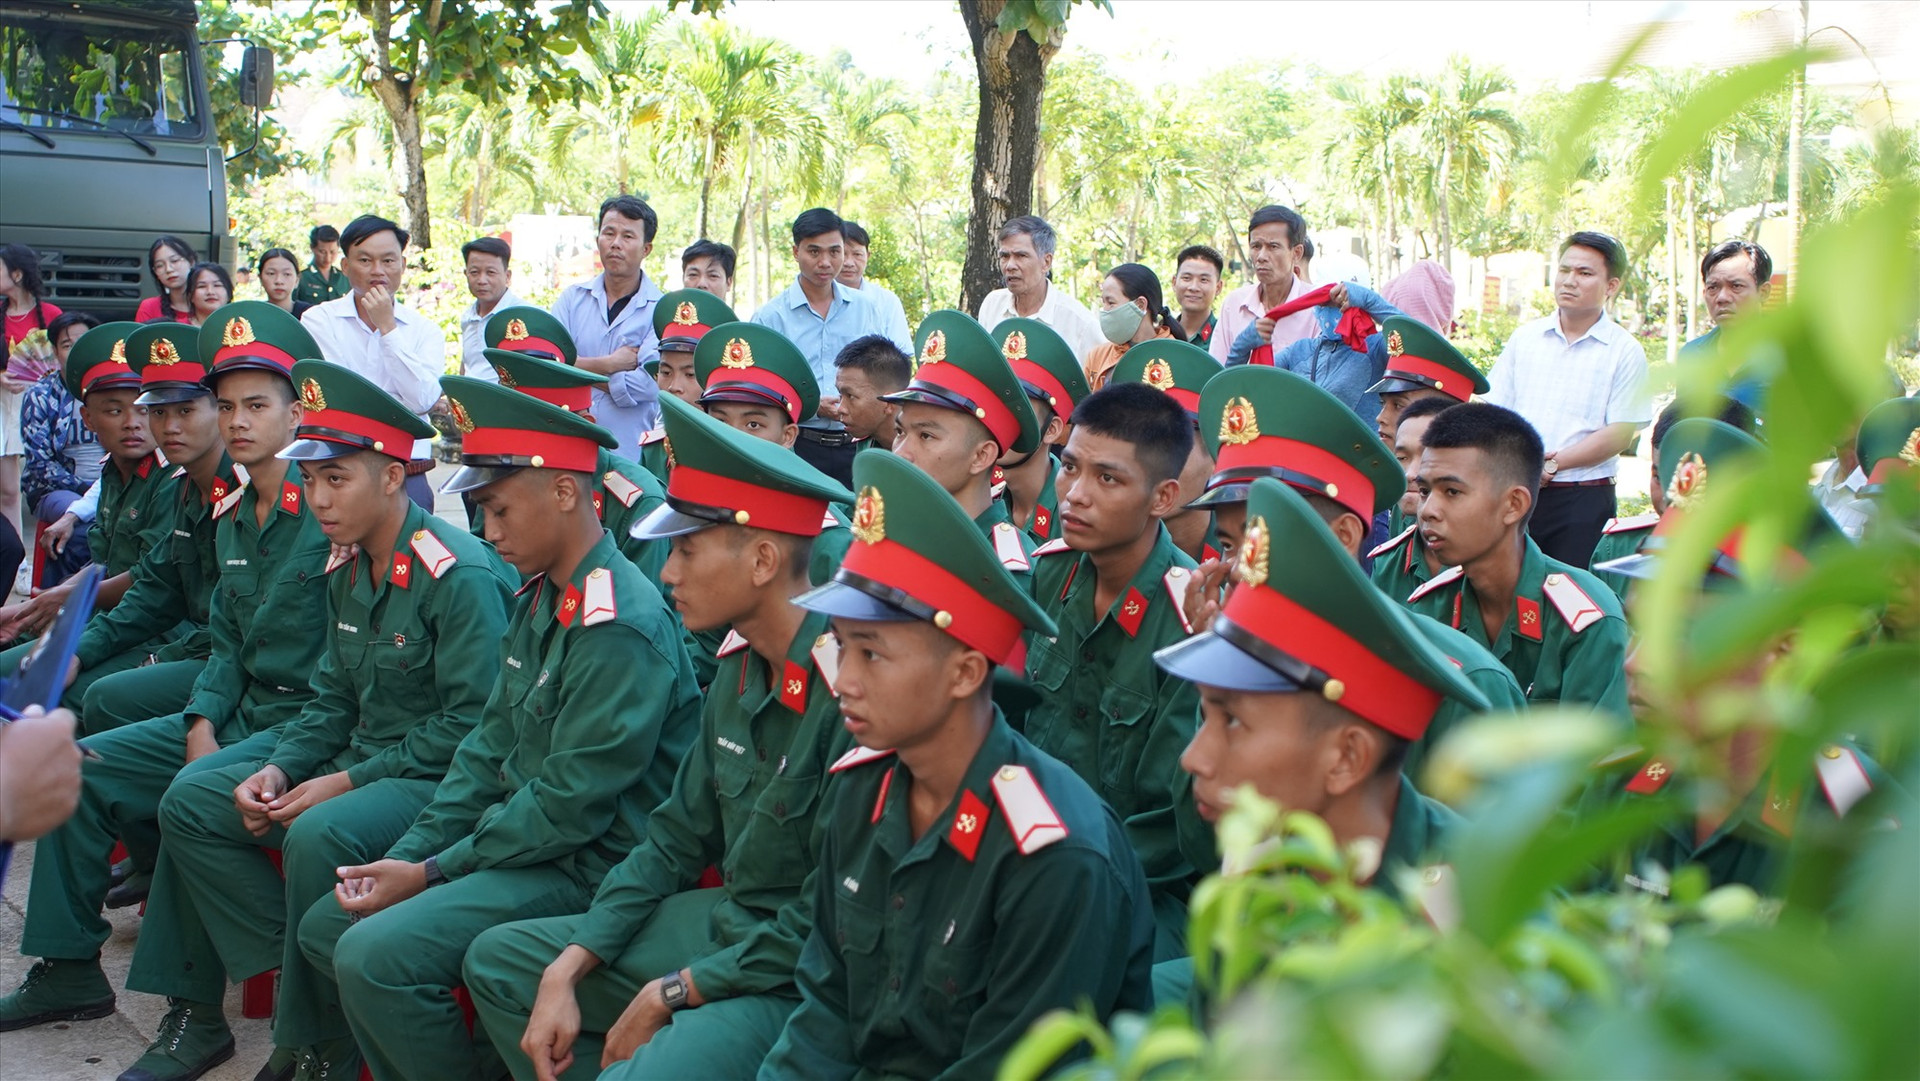 42 chiến sĩ mới của huyện Nông Sơn sẽ tham gia huấn luyện quân sự, giáo dục chính trị tại Lữ đoàn Công binh 270 - Quân khu 5. Ảnh: MINH TÂM